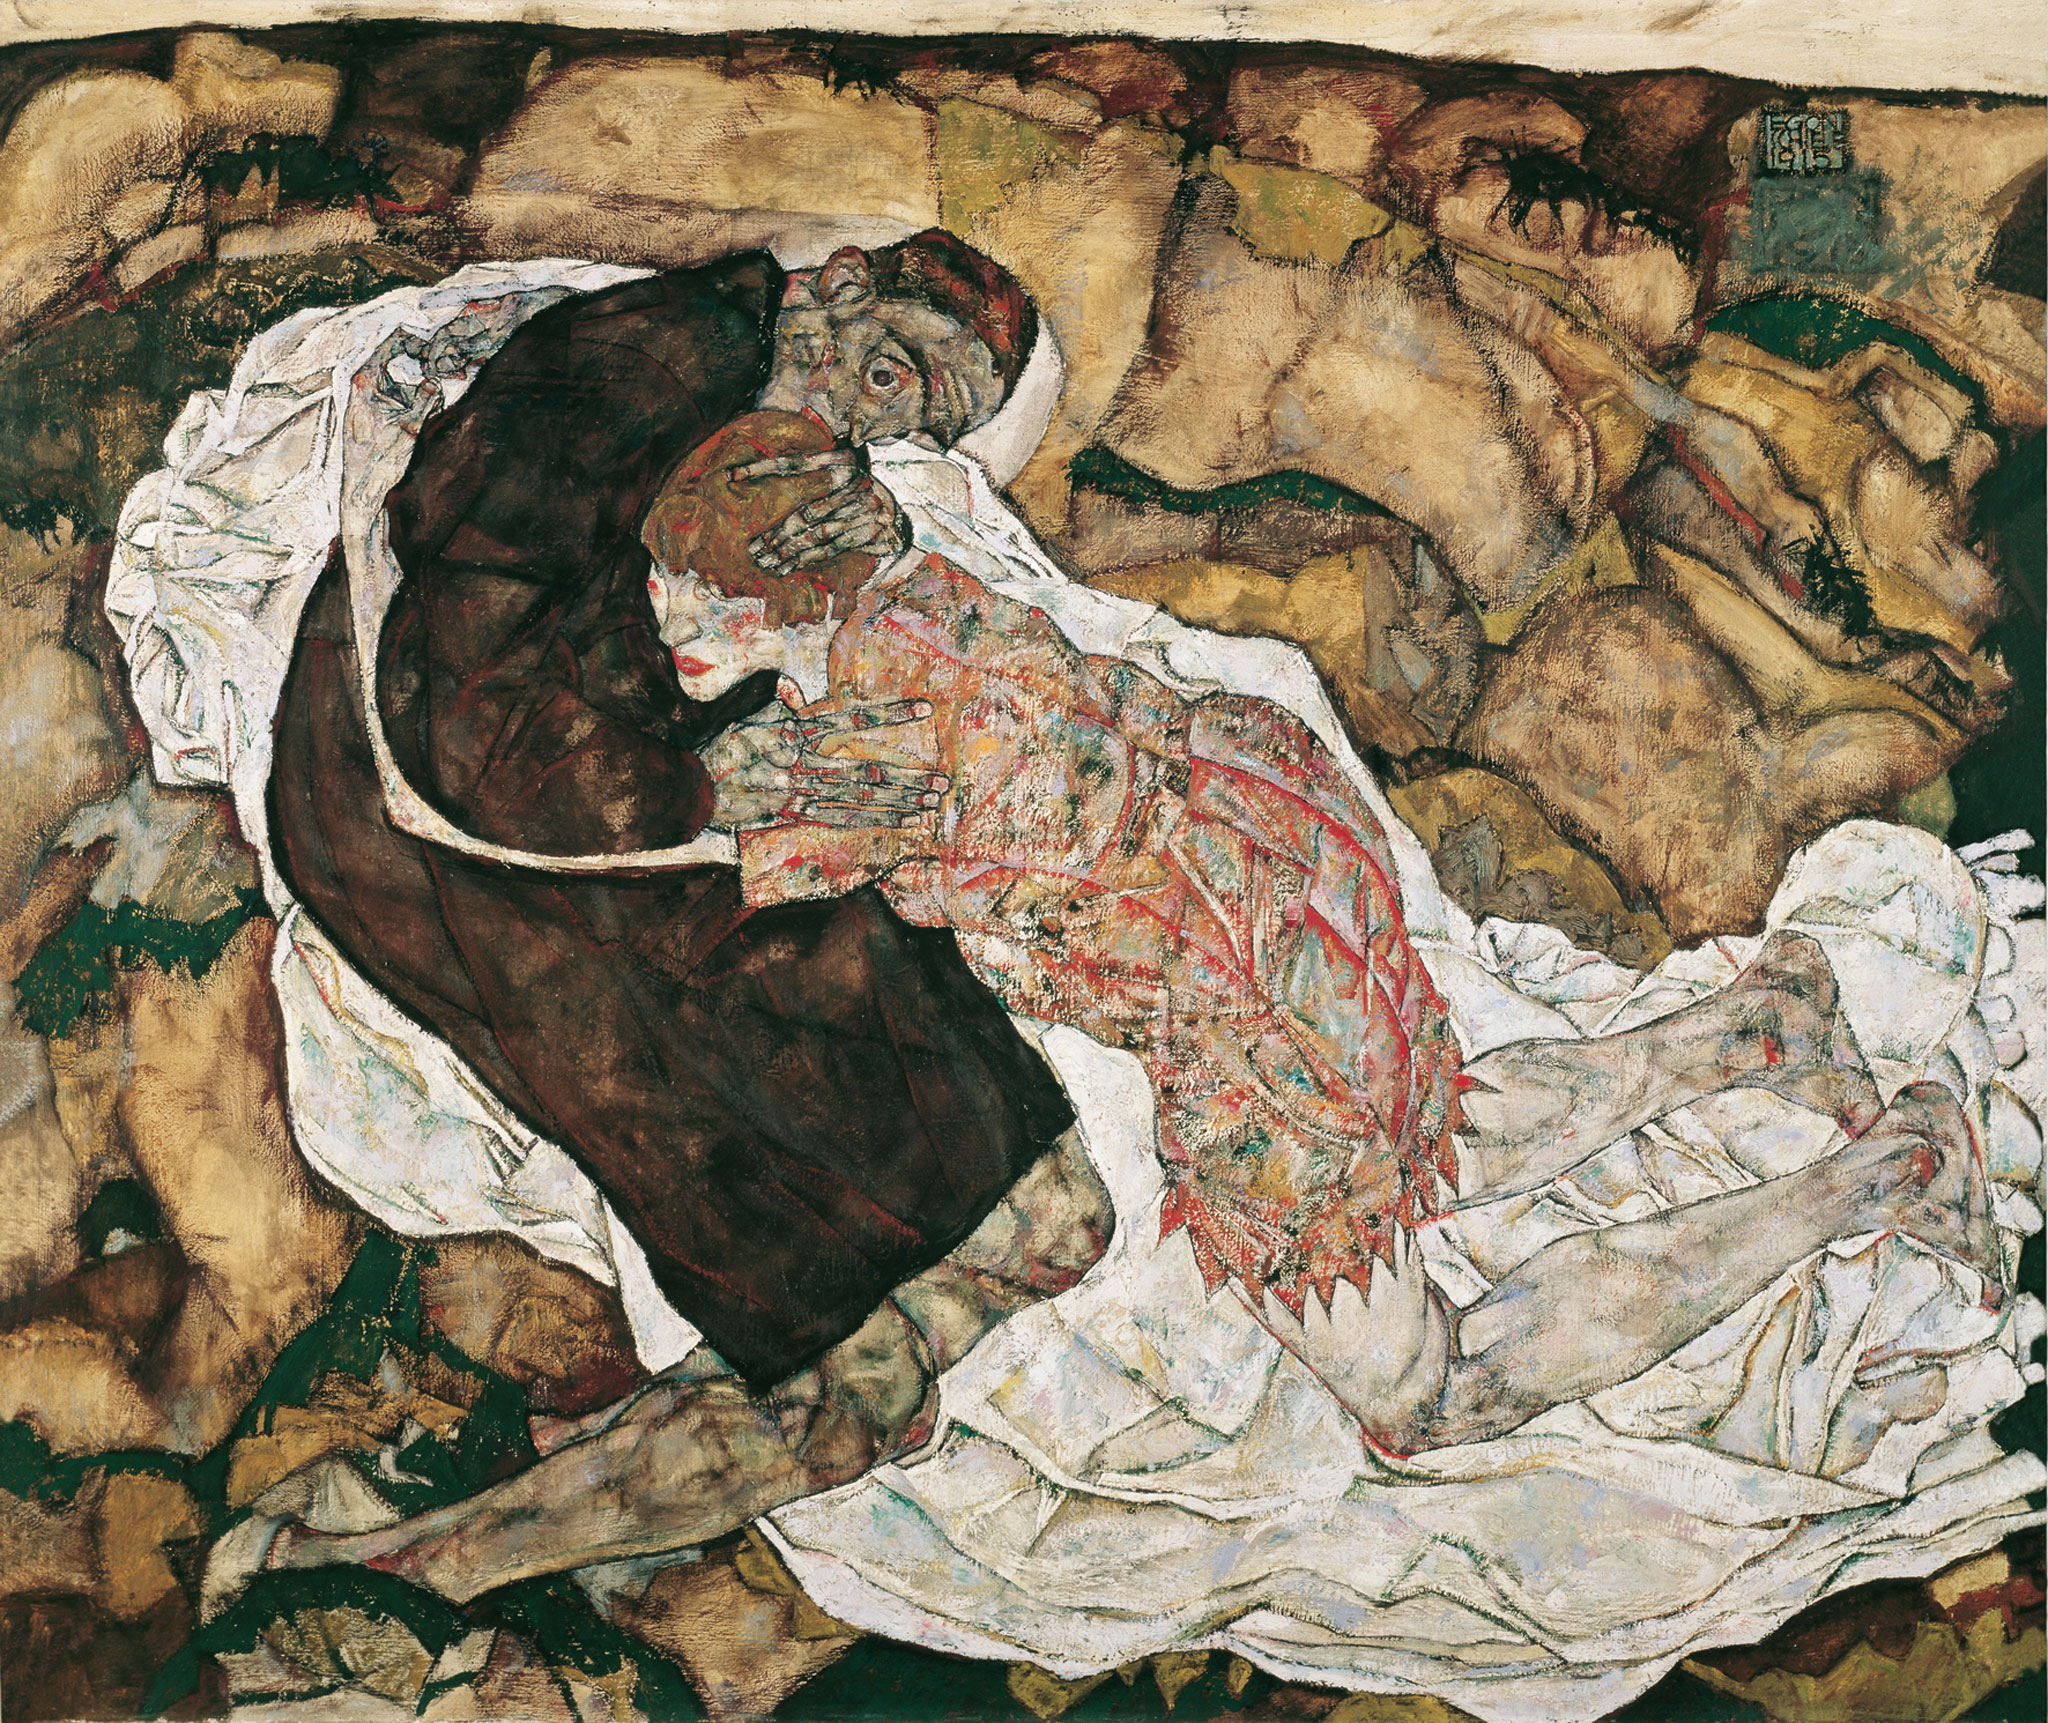 Death And The Maiden by Egon Schiele - 1915 - 89.5 x 125.5 cm Österreichische Galerie Belvedere